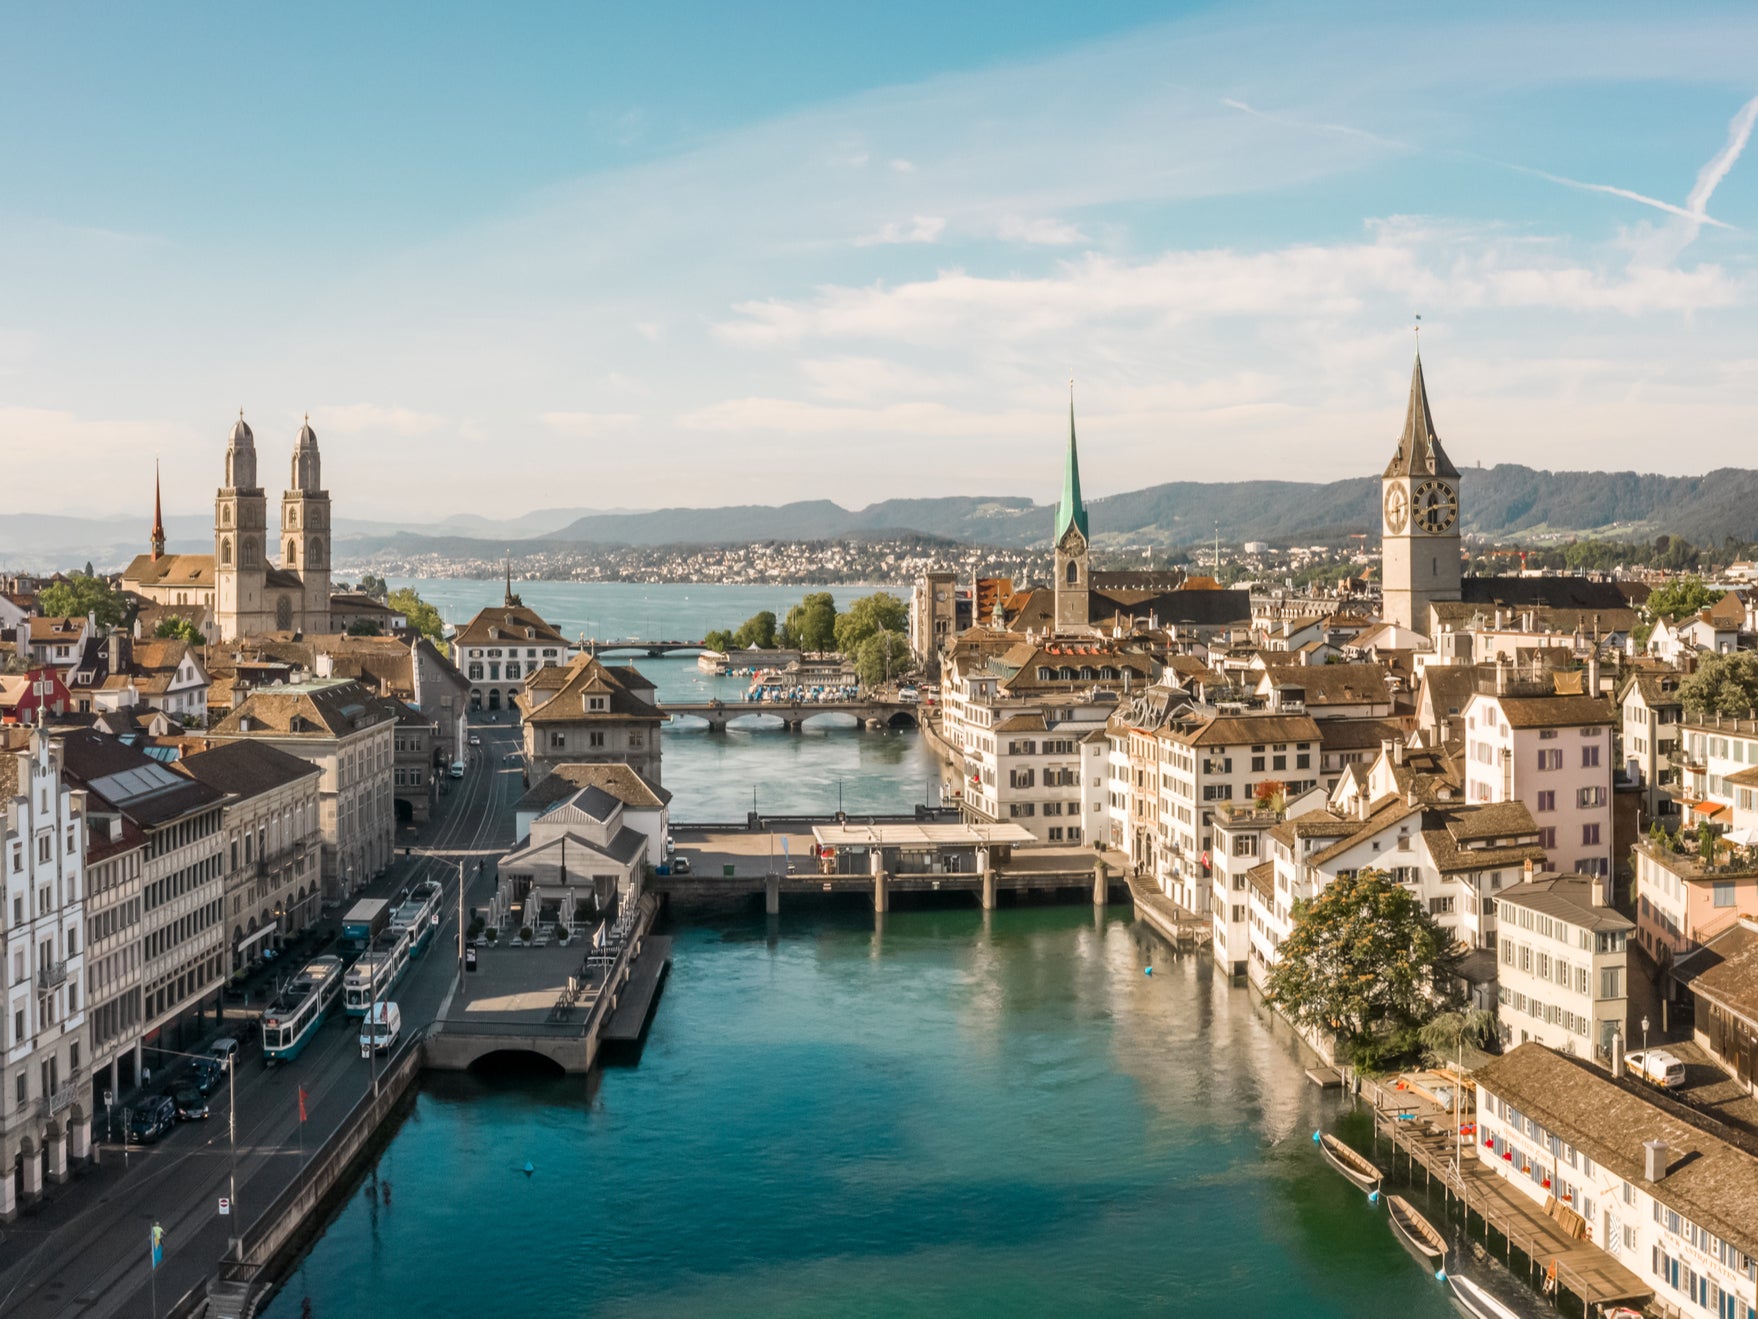 The Zurich skyline, Switzerland